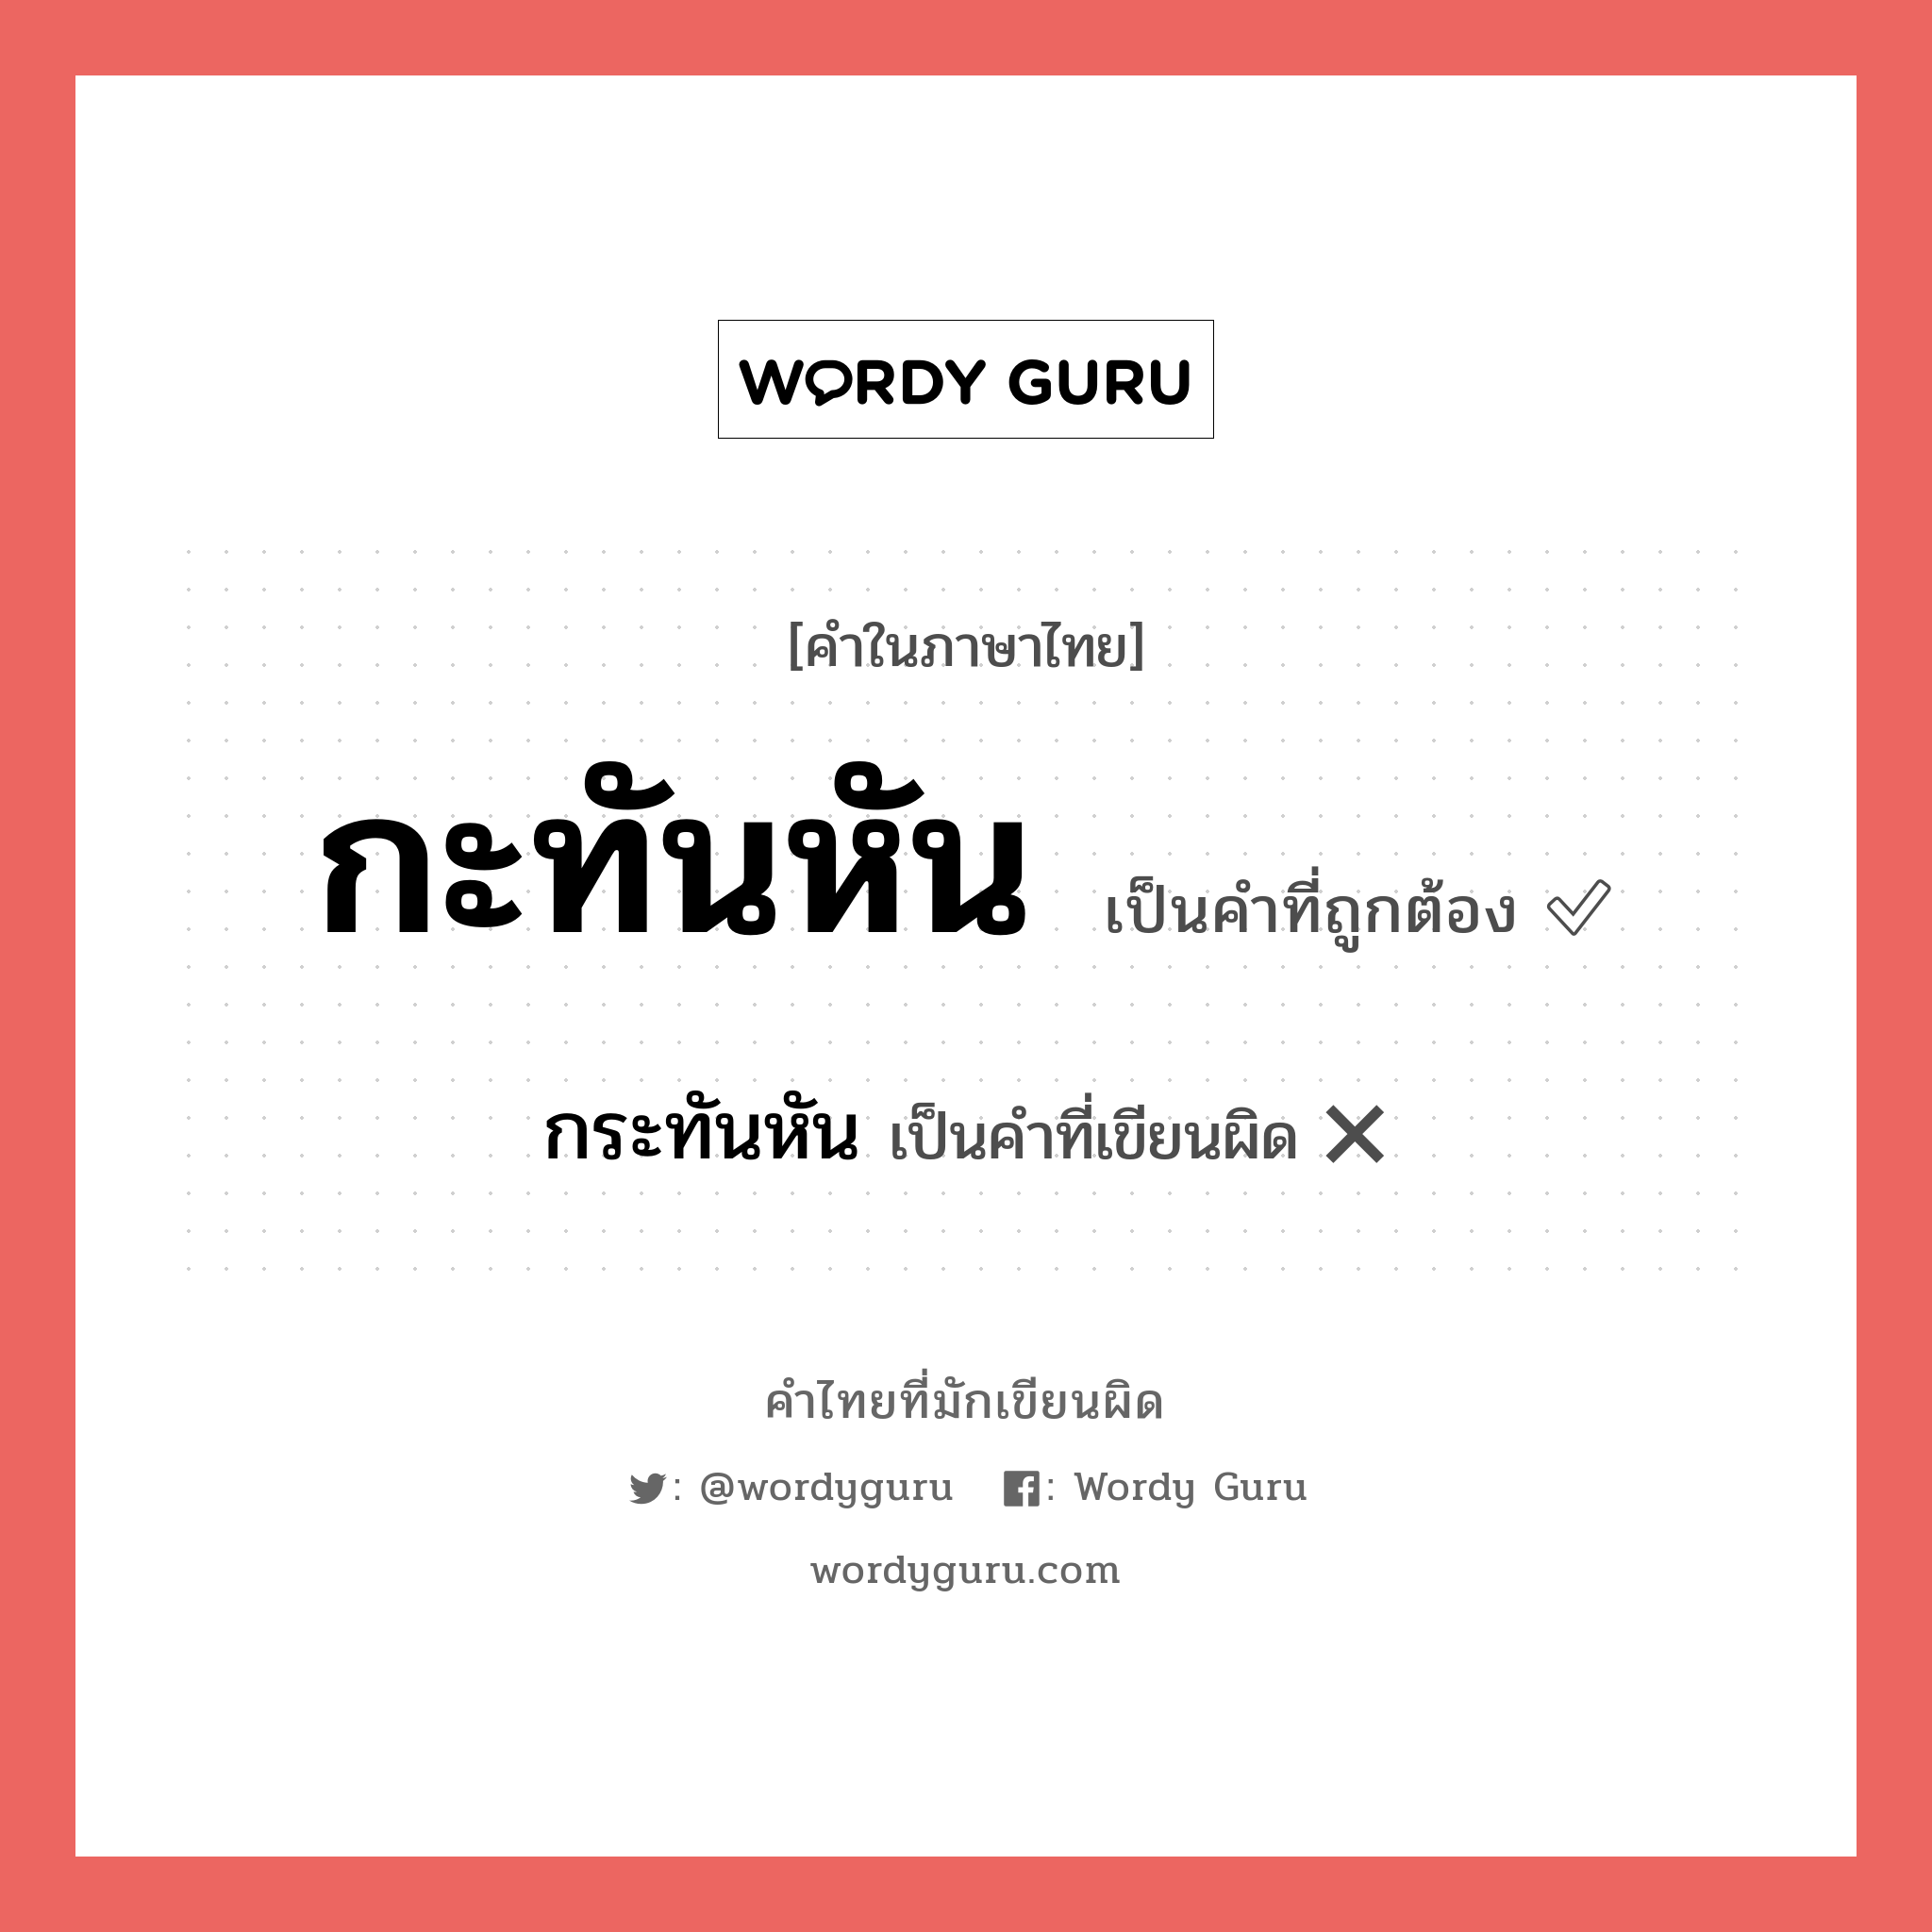 กะทันหัน หรือ กระทันหัน คำไหนเขียนถูก?, คำในภาษาไทยที่มักเขียนผิด กะทันหัน คำที่ผิด ❌ กระทันหัน